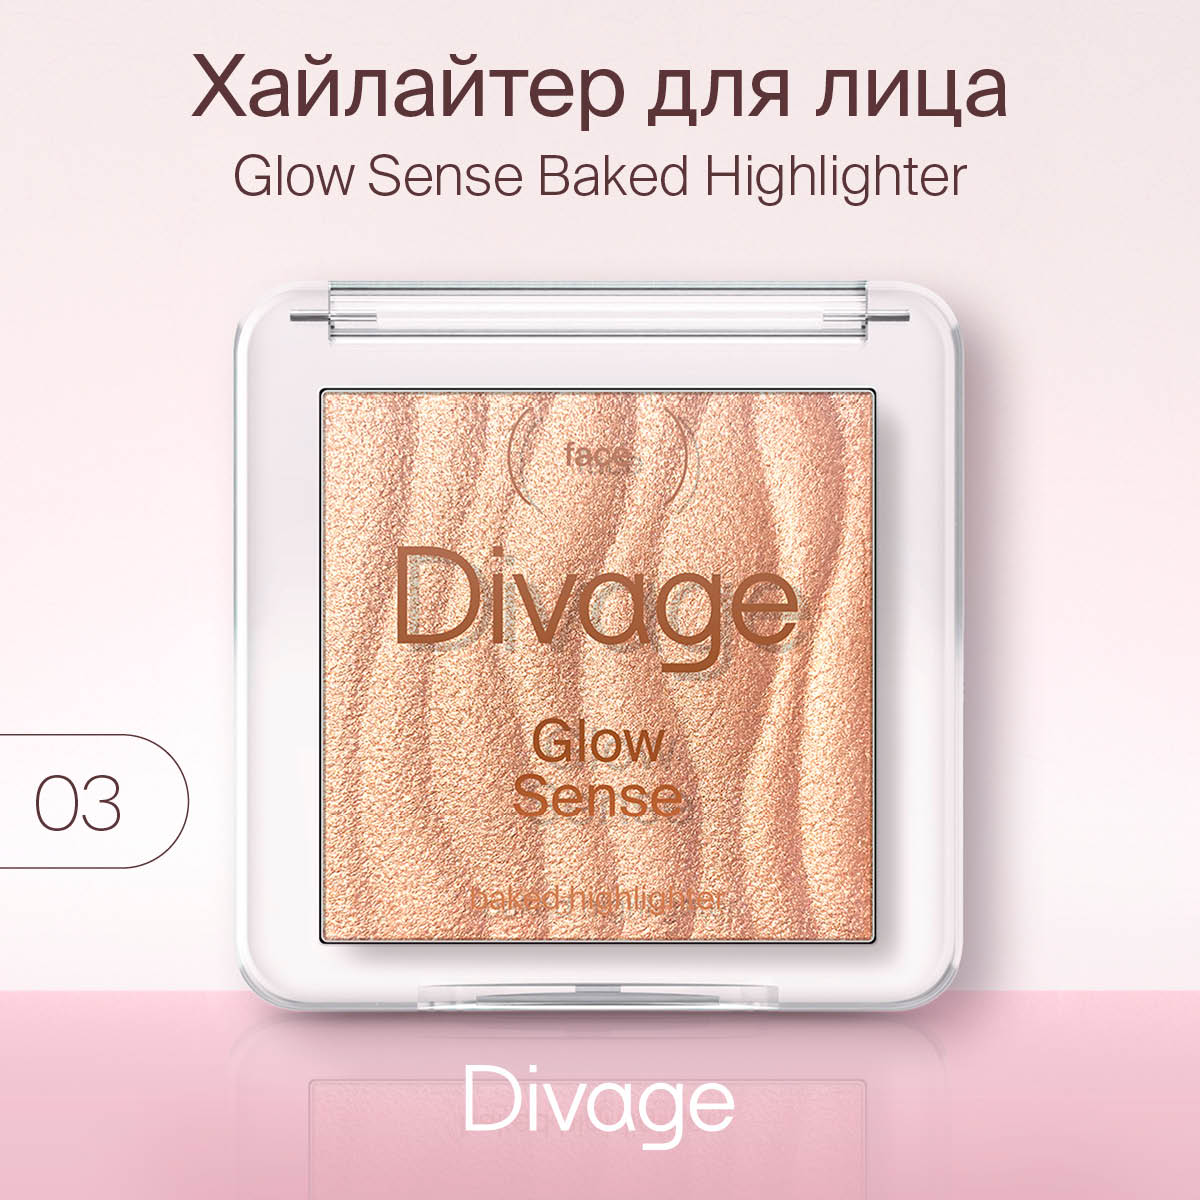 Хайлайтер для лица Divage Glow Sense Baked т.03 Бронза 5,5 г